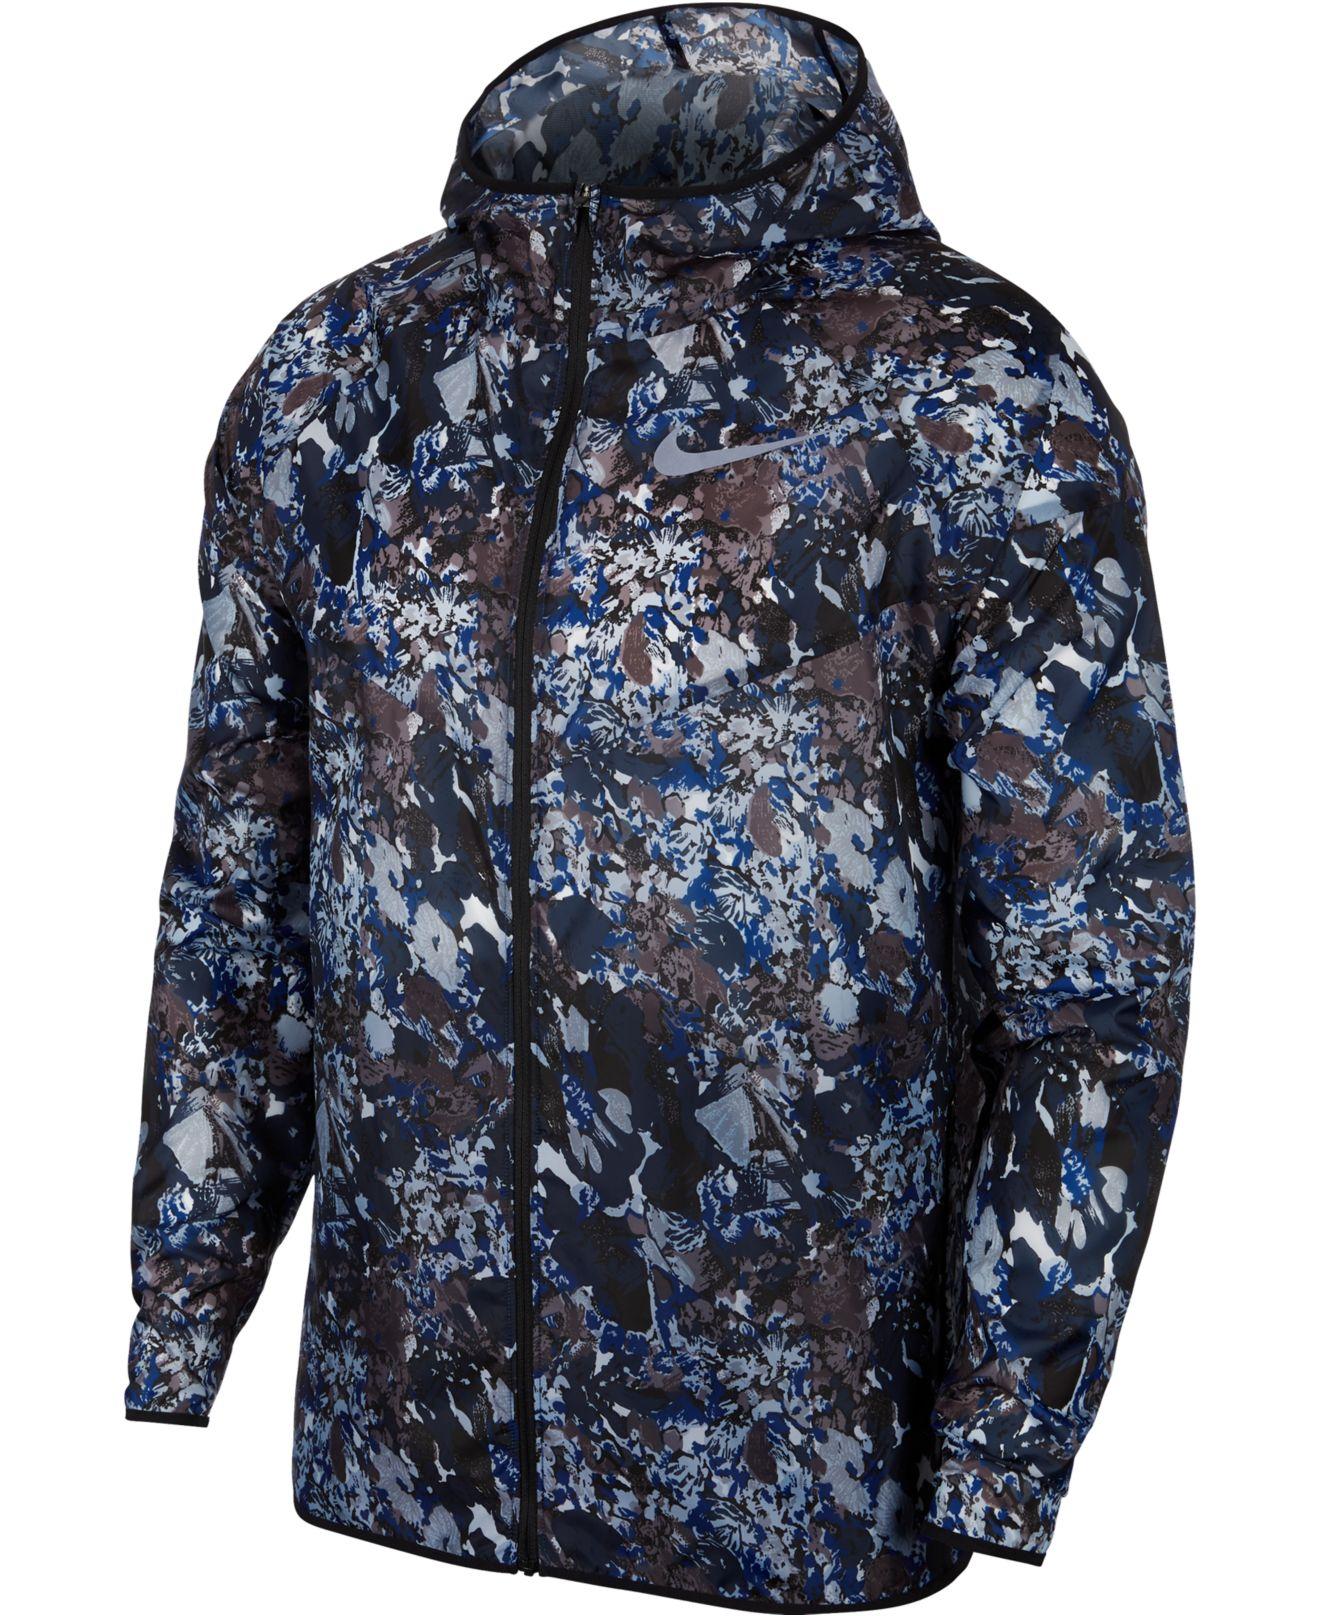 Nike Windrunner Printed Running Jacket in Blue for Men - Lyst